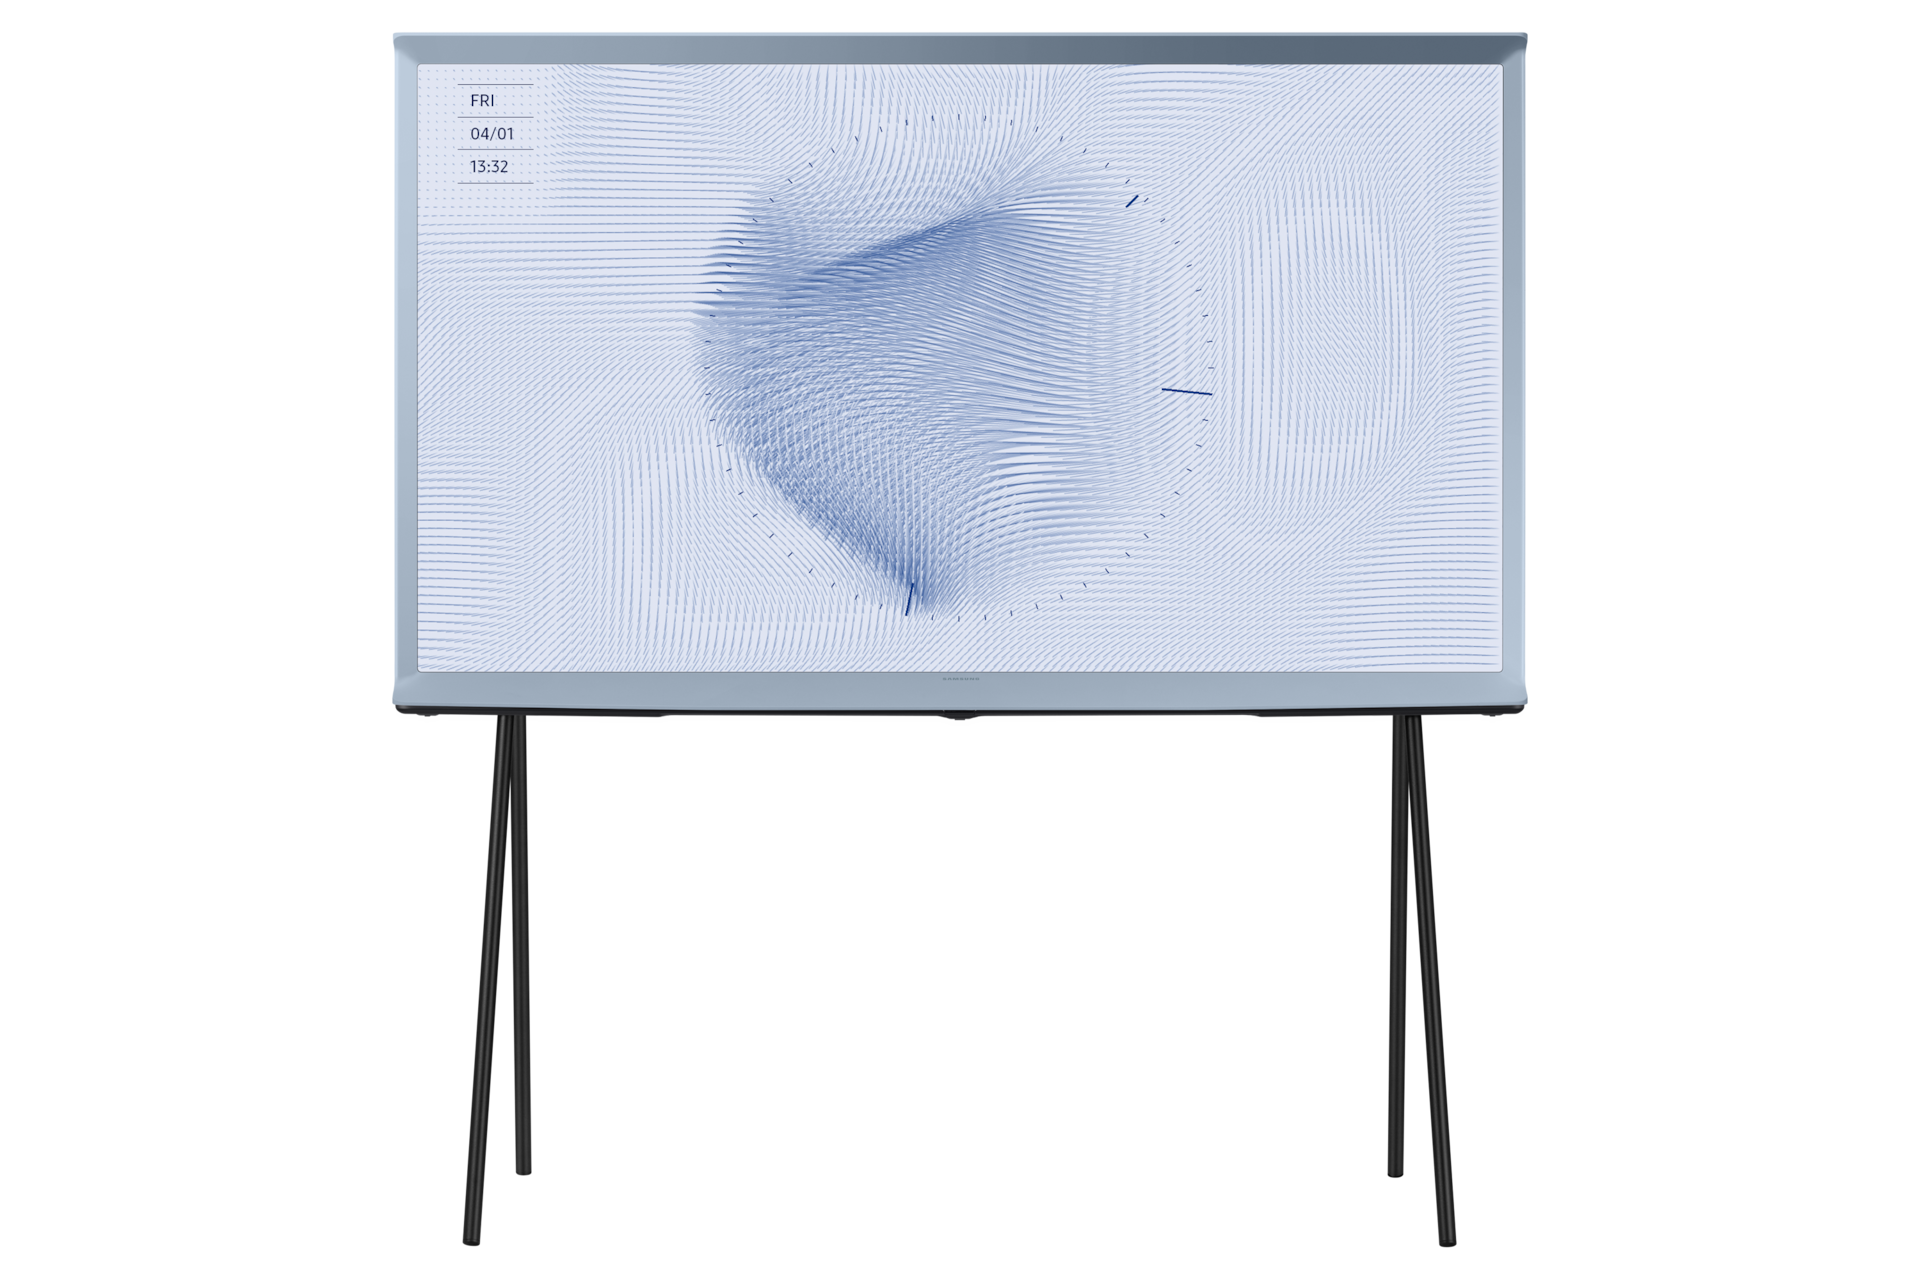 Chào mừng bạn đến với chiếc tivi Samsung 55 inch The Serif LS01B cotton-blue. Hãy cùng xem hình ảnh để khám phá thiết kế độc đáo và chất lượng hình ảnh tuyệt vời của sản phẩm này.